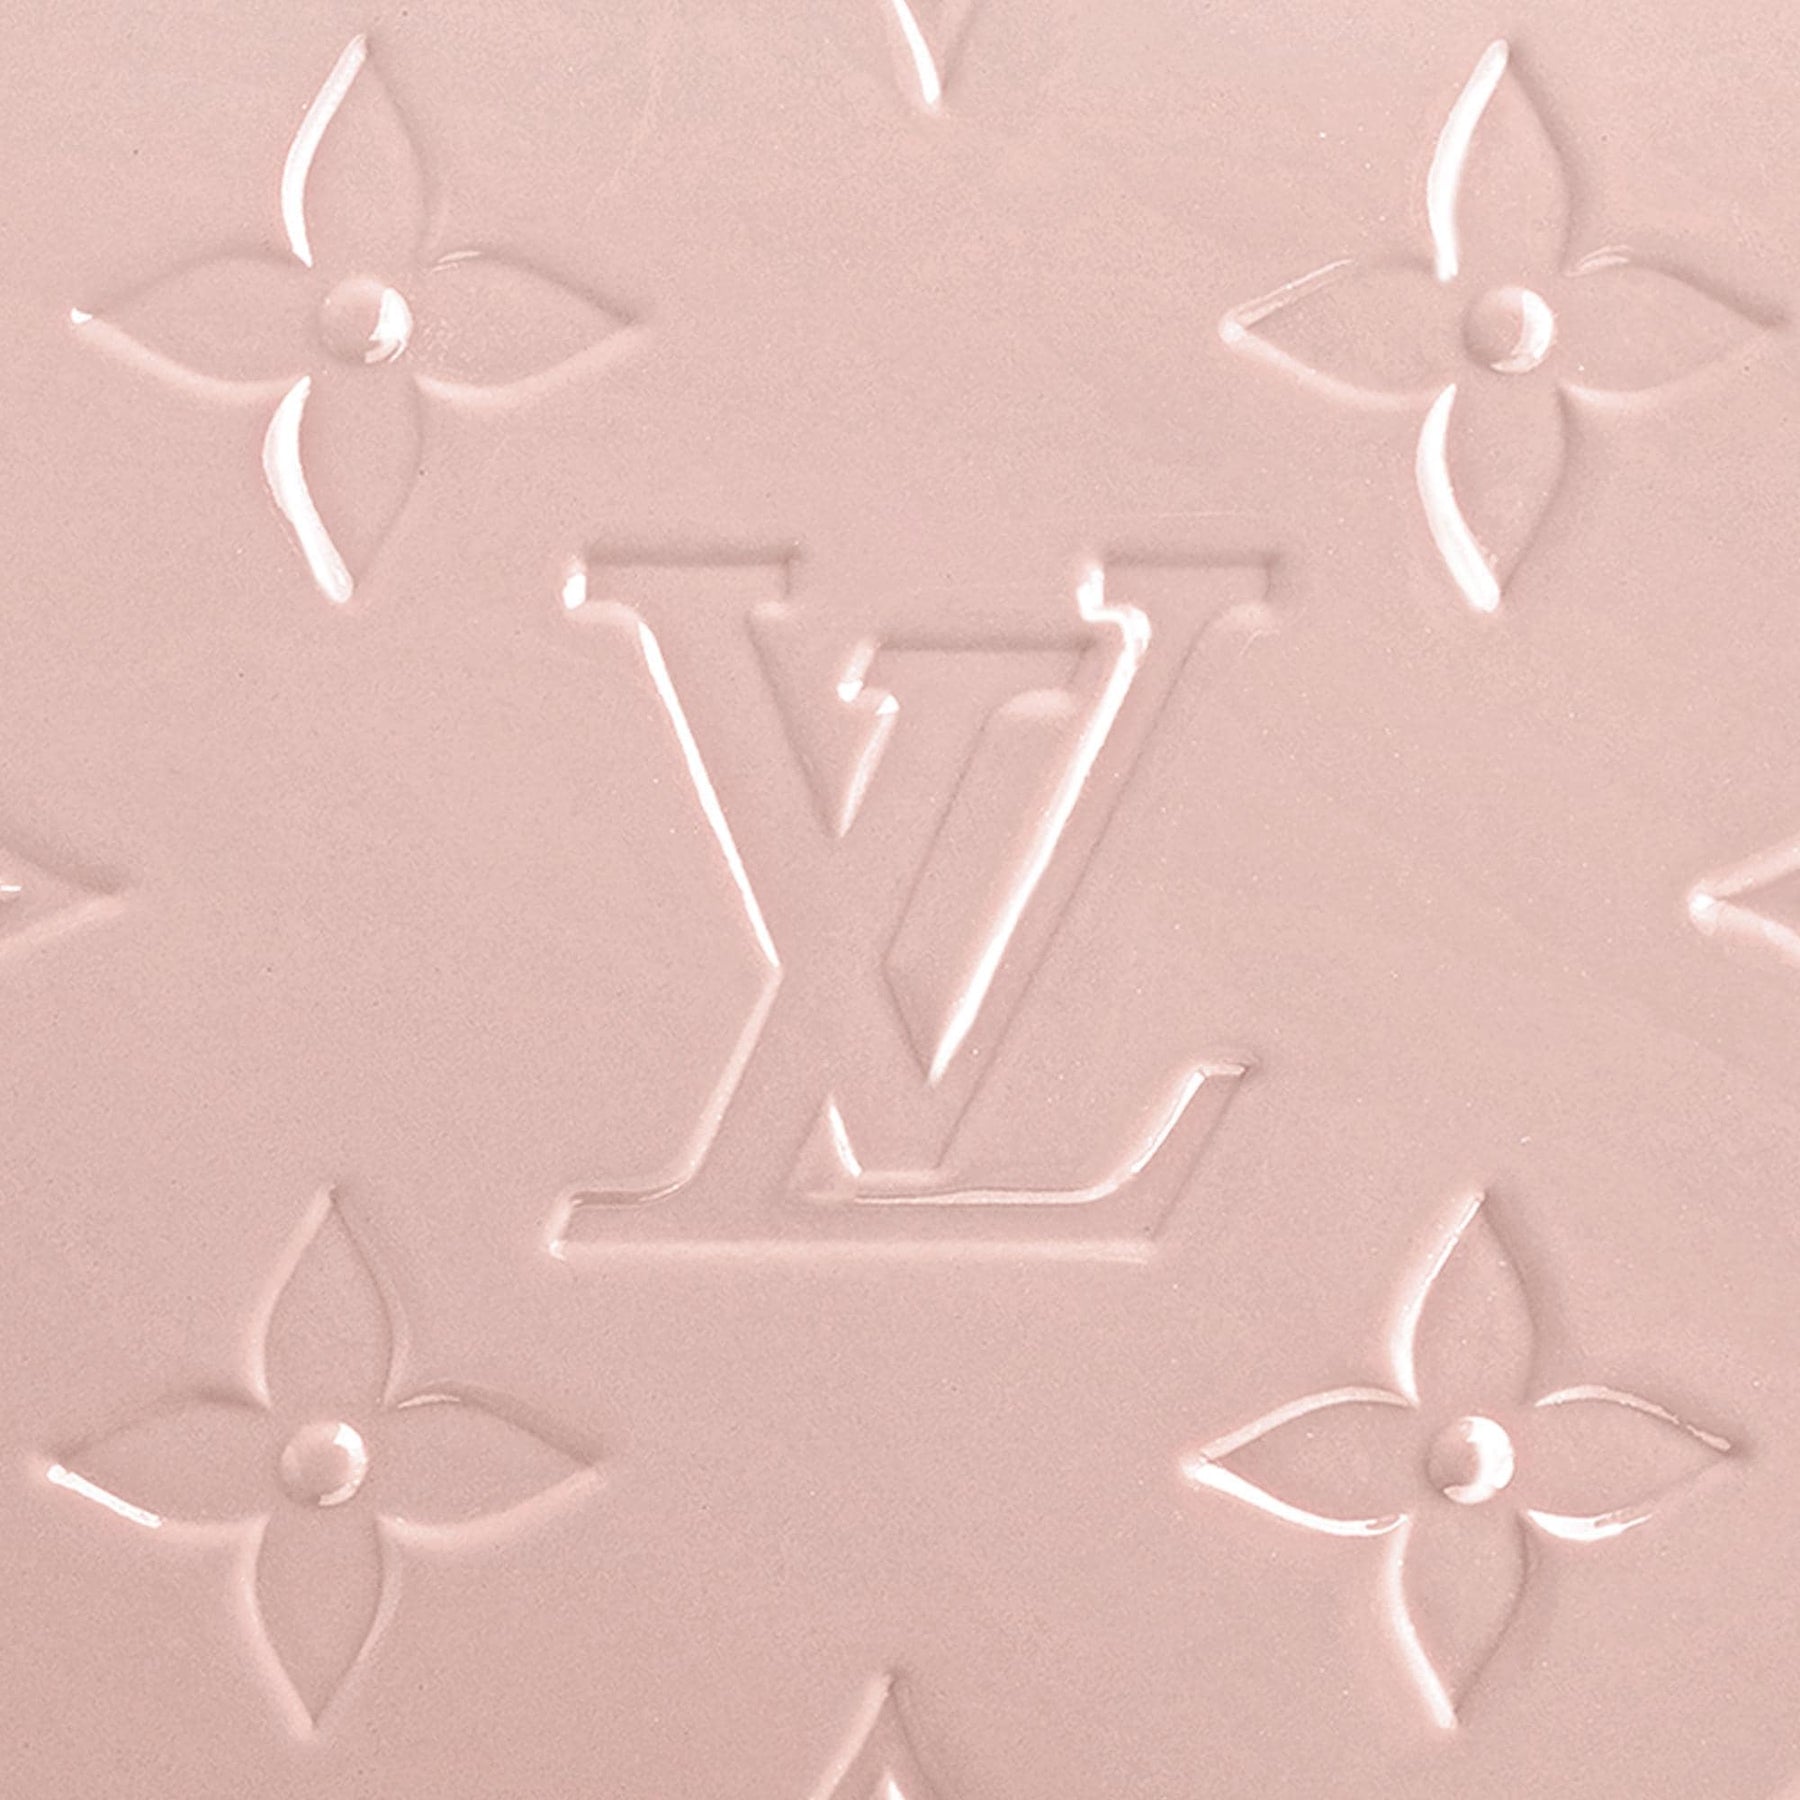 Louis Vuitton Pochette Félicie in Rose Ballerine Monogram Vernis - SOLD